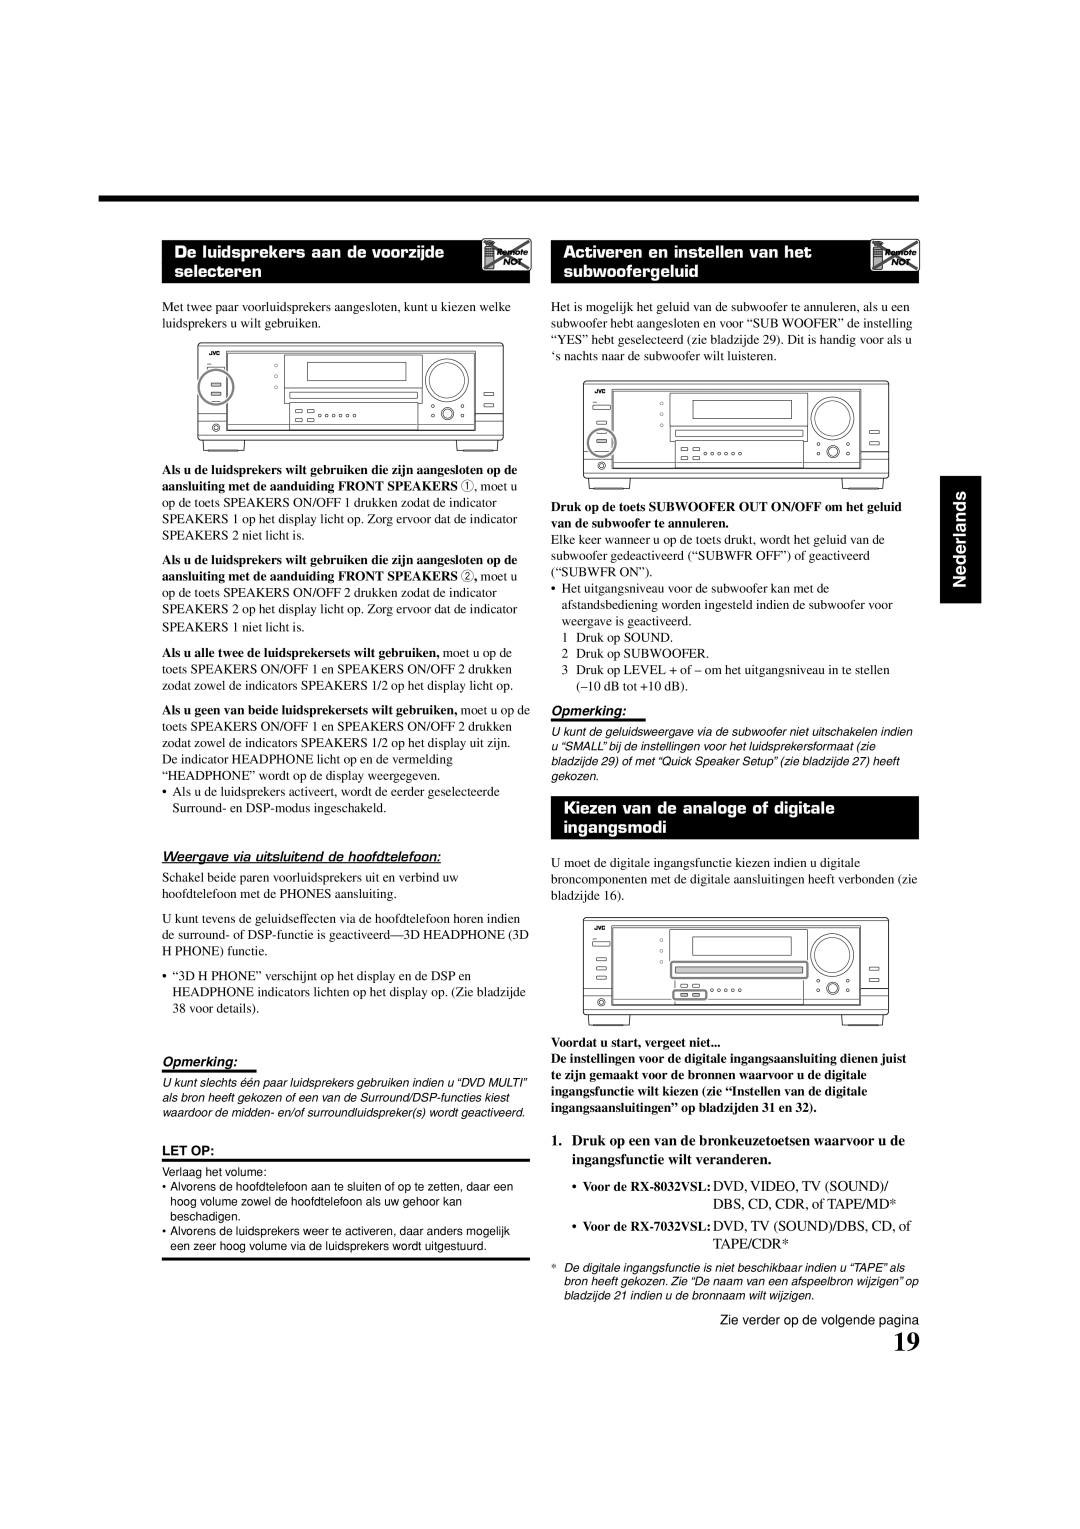 JVC RX-8032VSL manual Kiezen van de analoge of digitale Ingangsmodi, Weergave via uitsluitend de hoofdtelefoon 